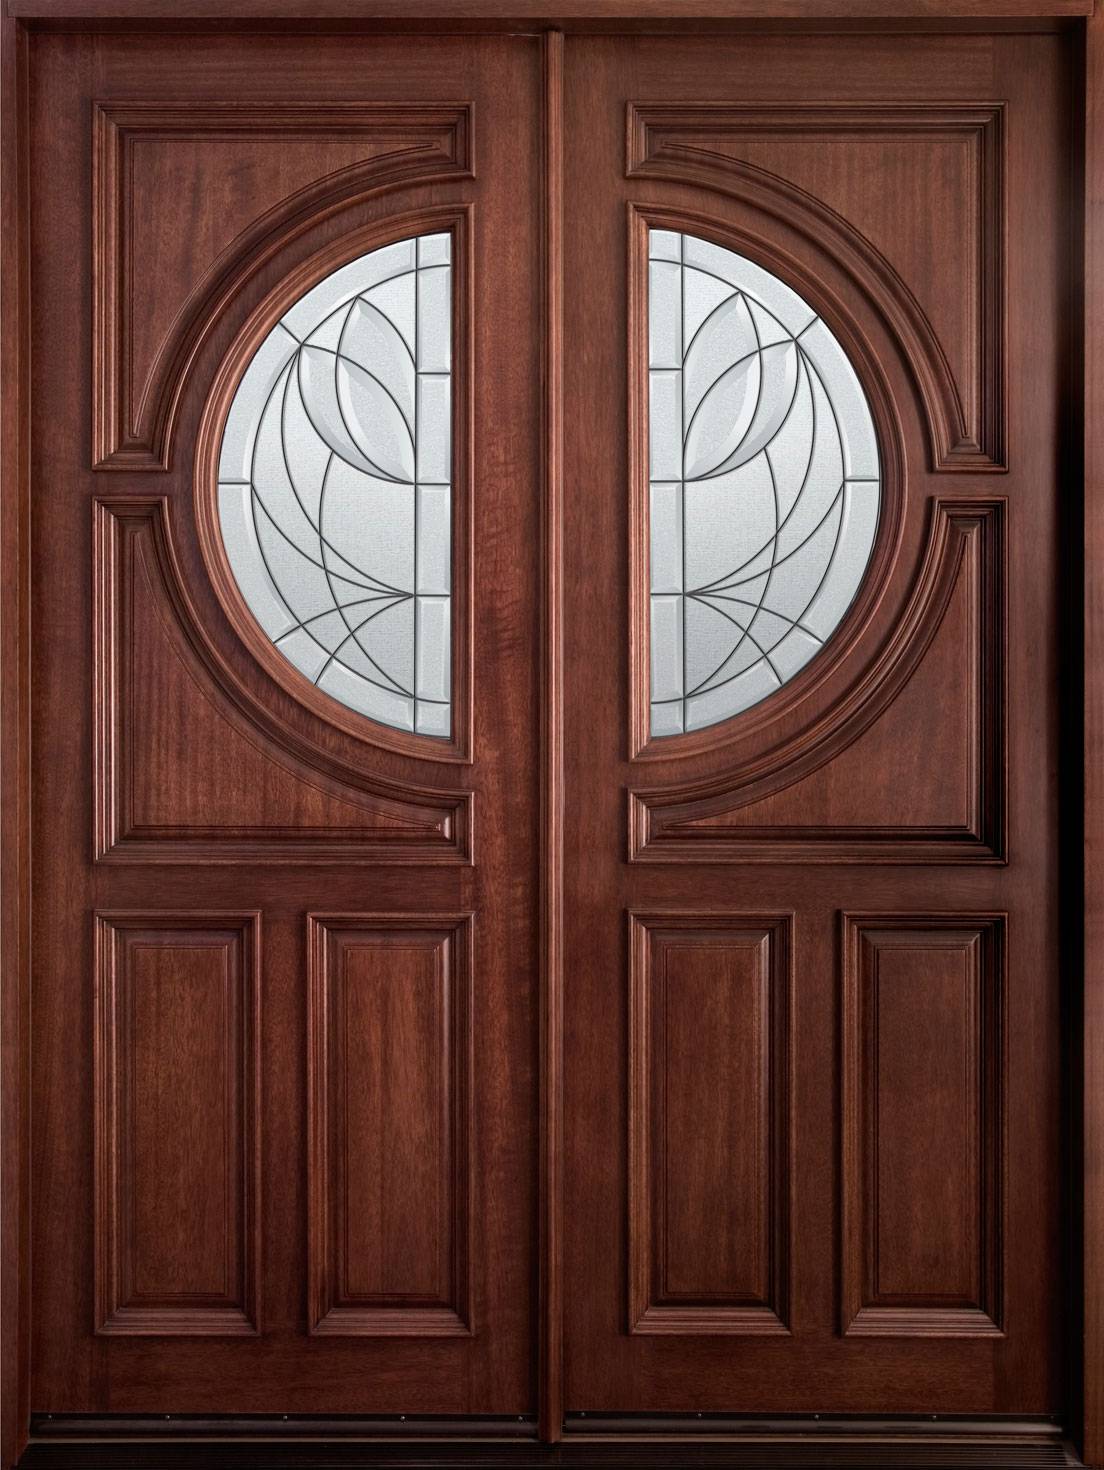 beautiful brown wood front double entry door